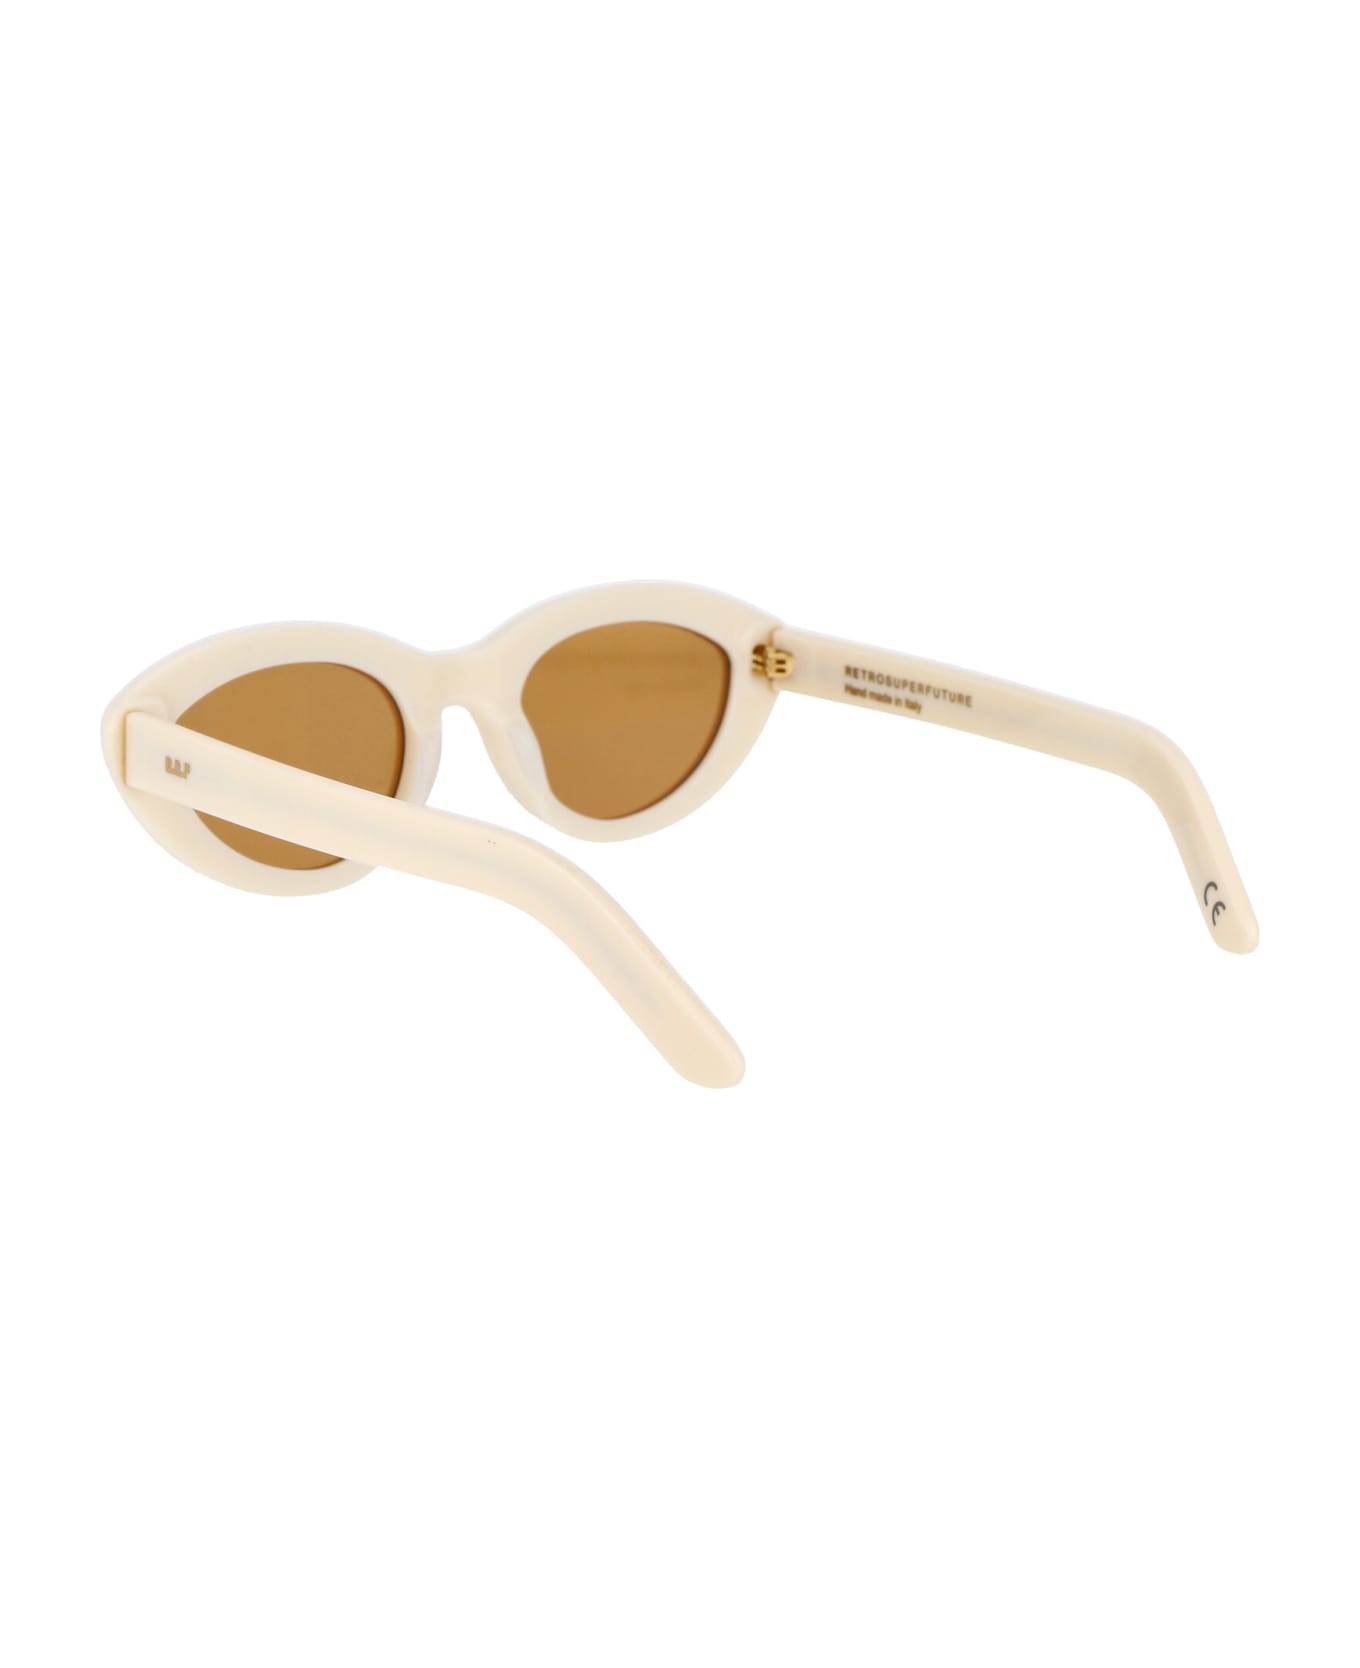 RETROSUPERFUTURE Cocca Sunglasses - PANNA サングラス